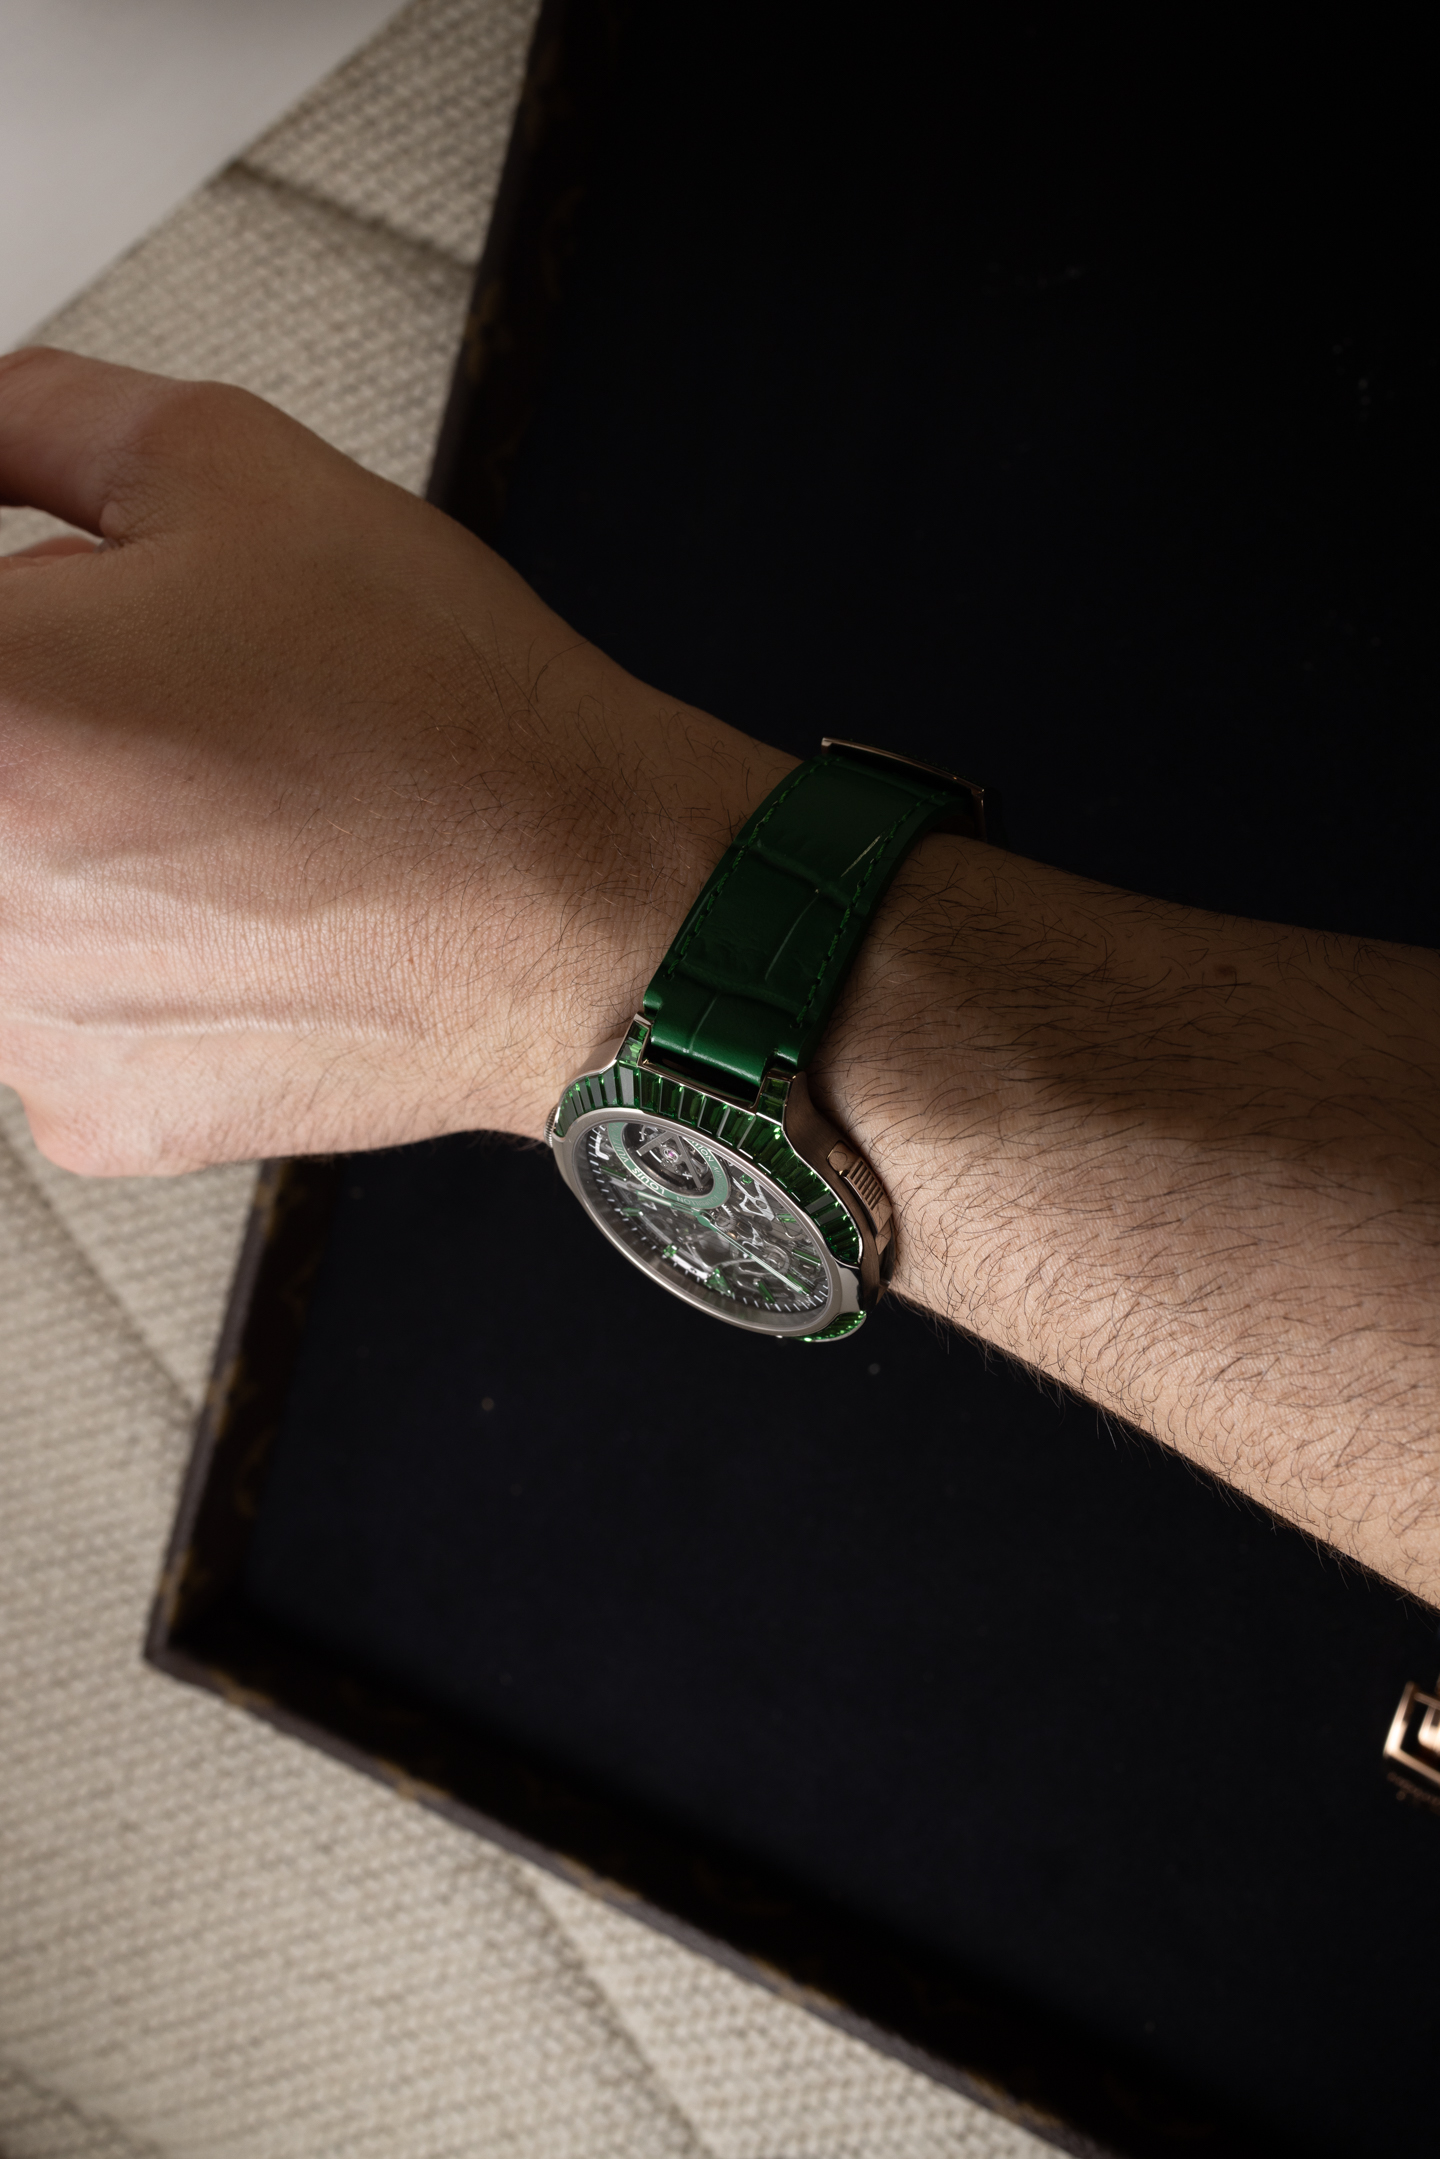 Louis Vuitton Voyager Watch - Q7D60